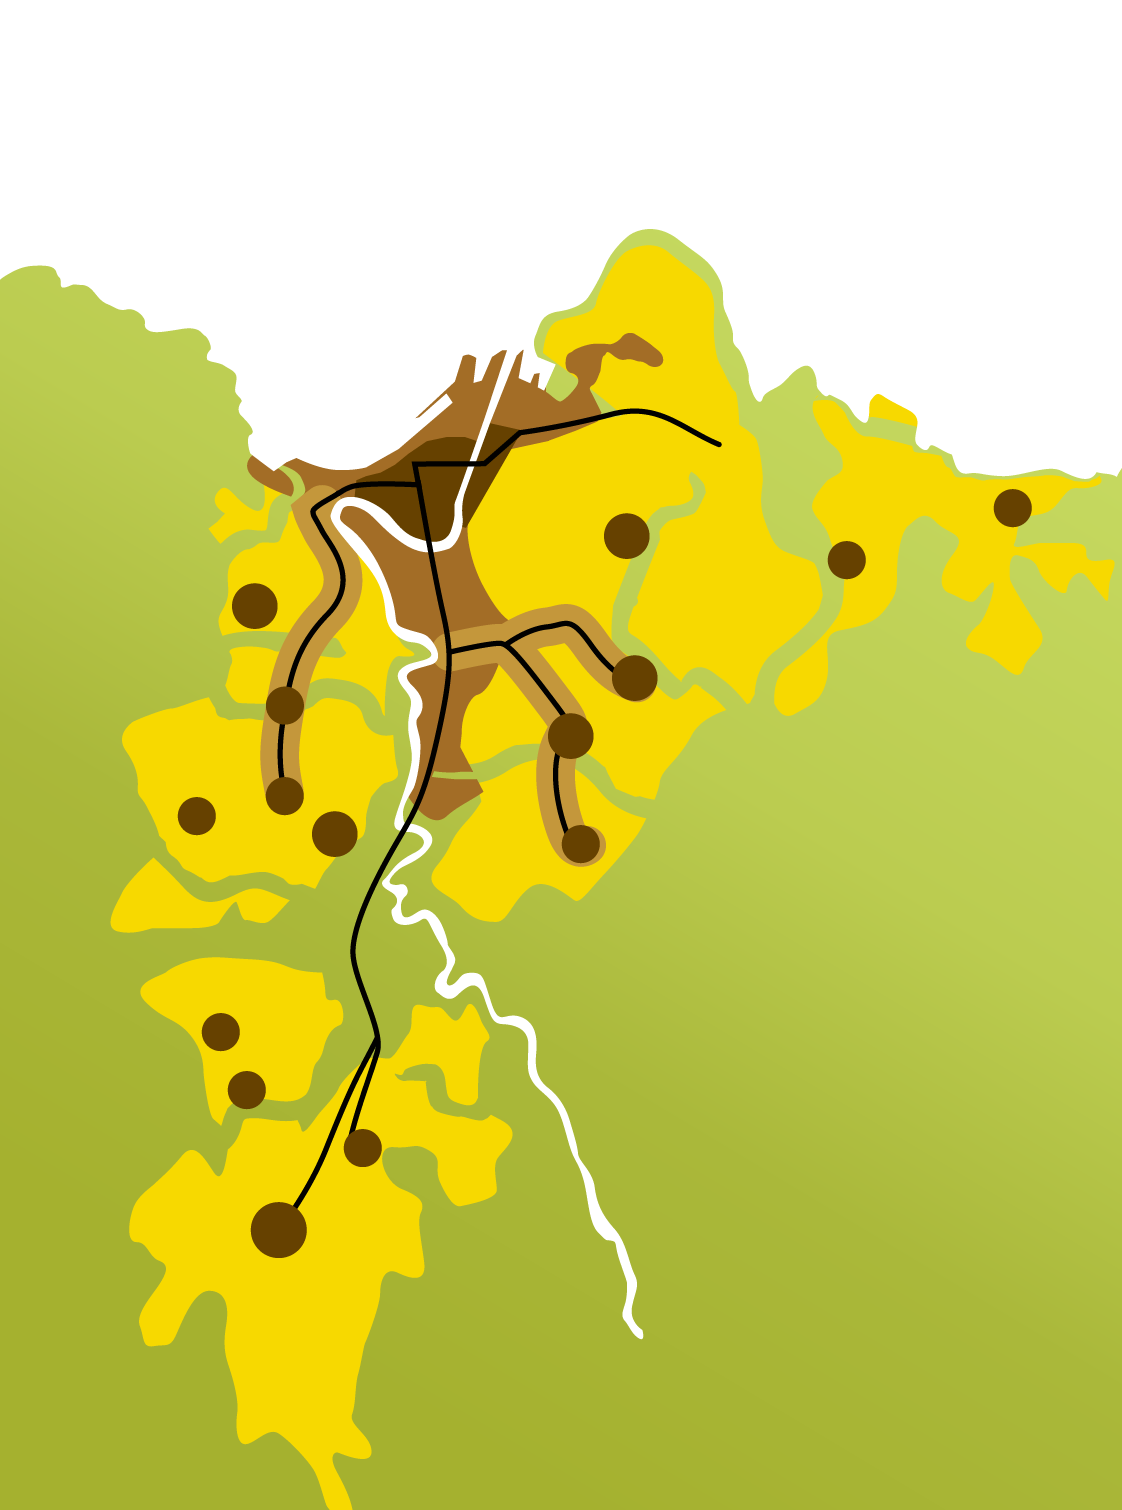 Trondheims mål er en bærekraftig by der det er lett å leve miljøvennlig Hovedgrep i kommuneplanens arealdel 2012-2024: Rett virksomhet på rett sted Fortetting med kvalitet Blå/grønne strukturer